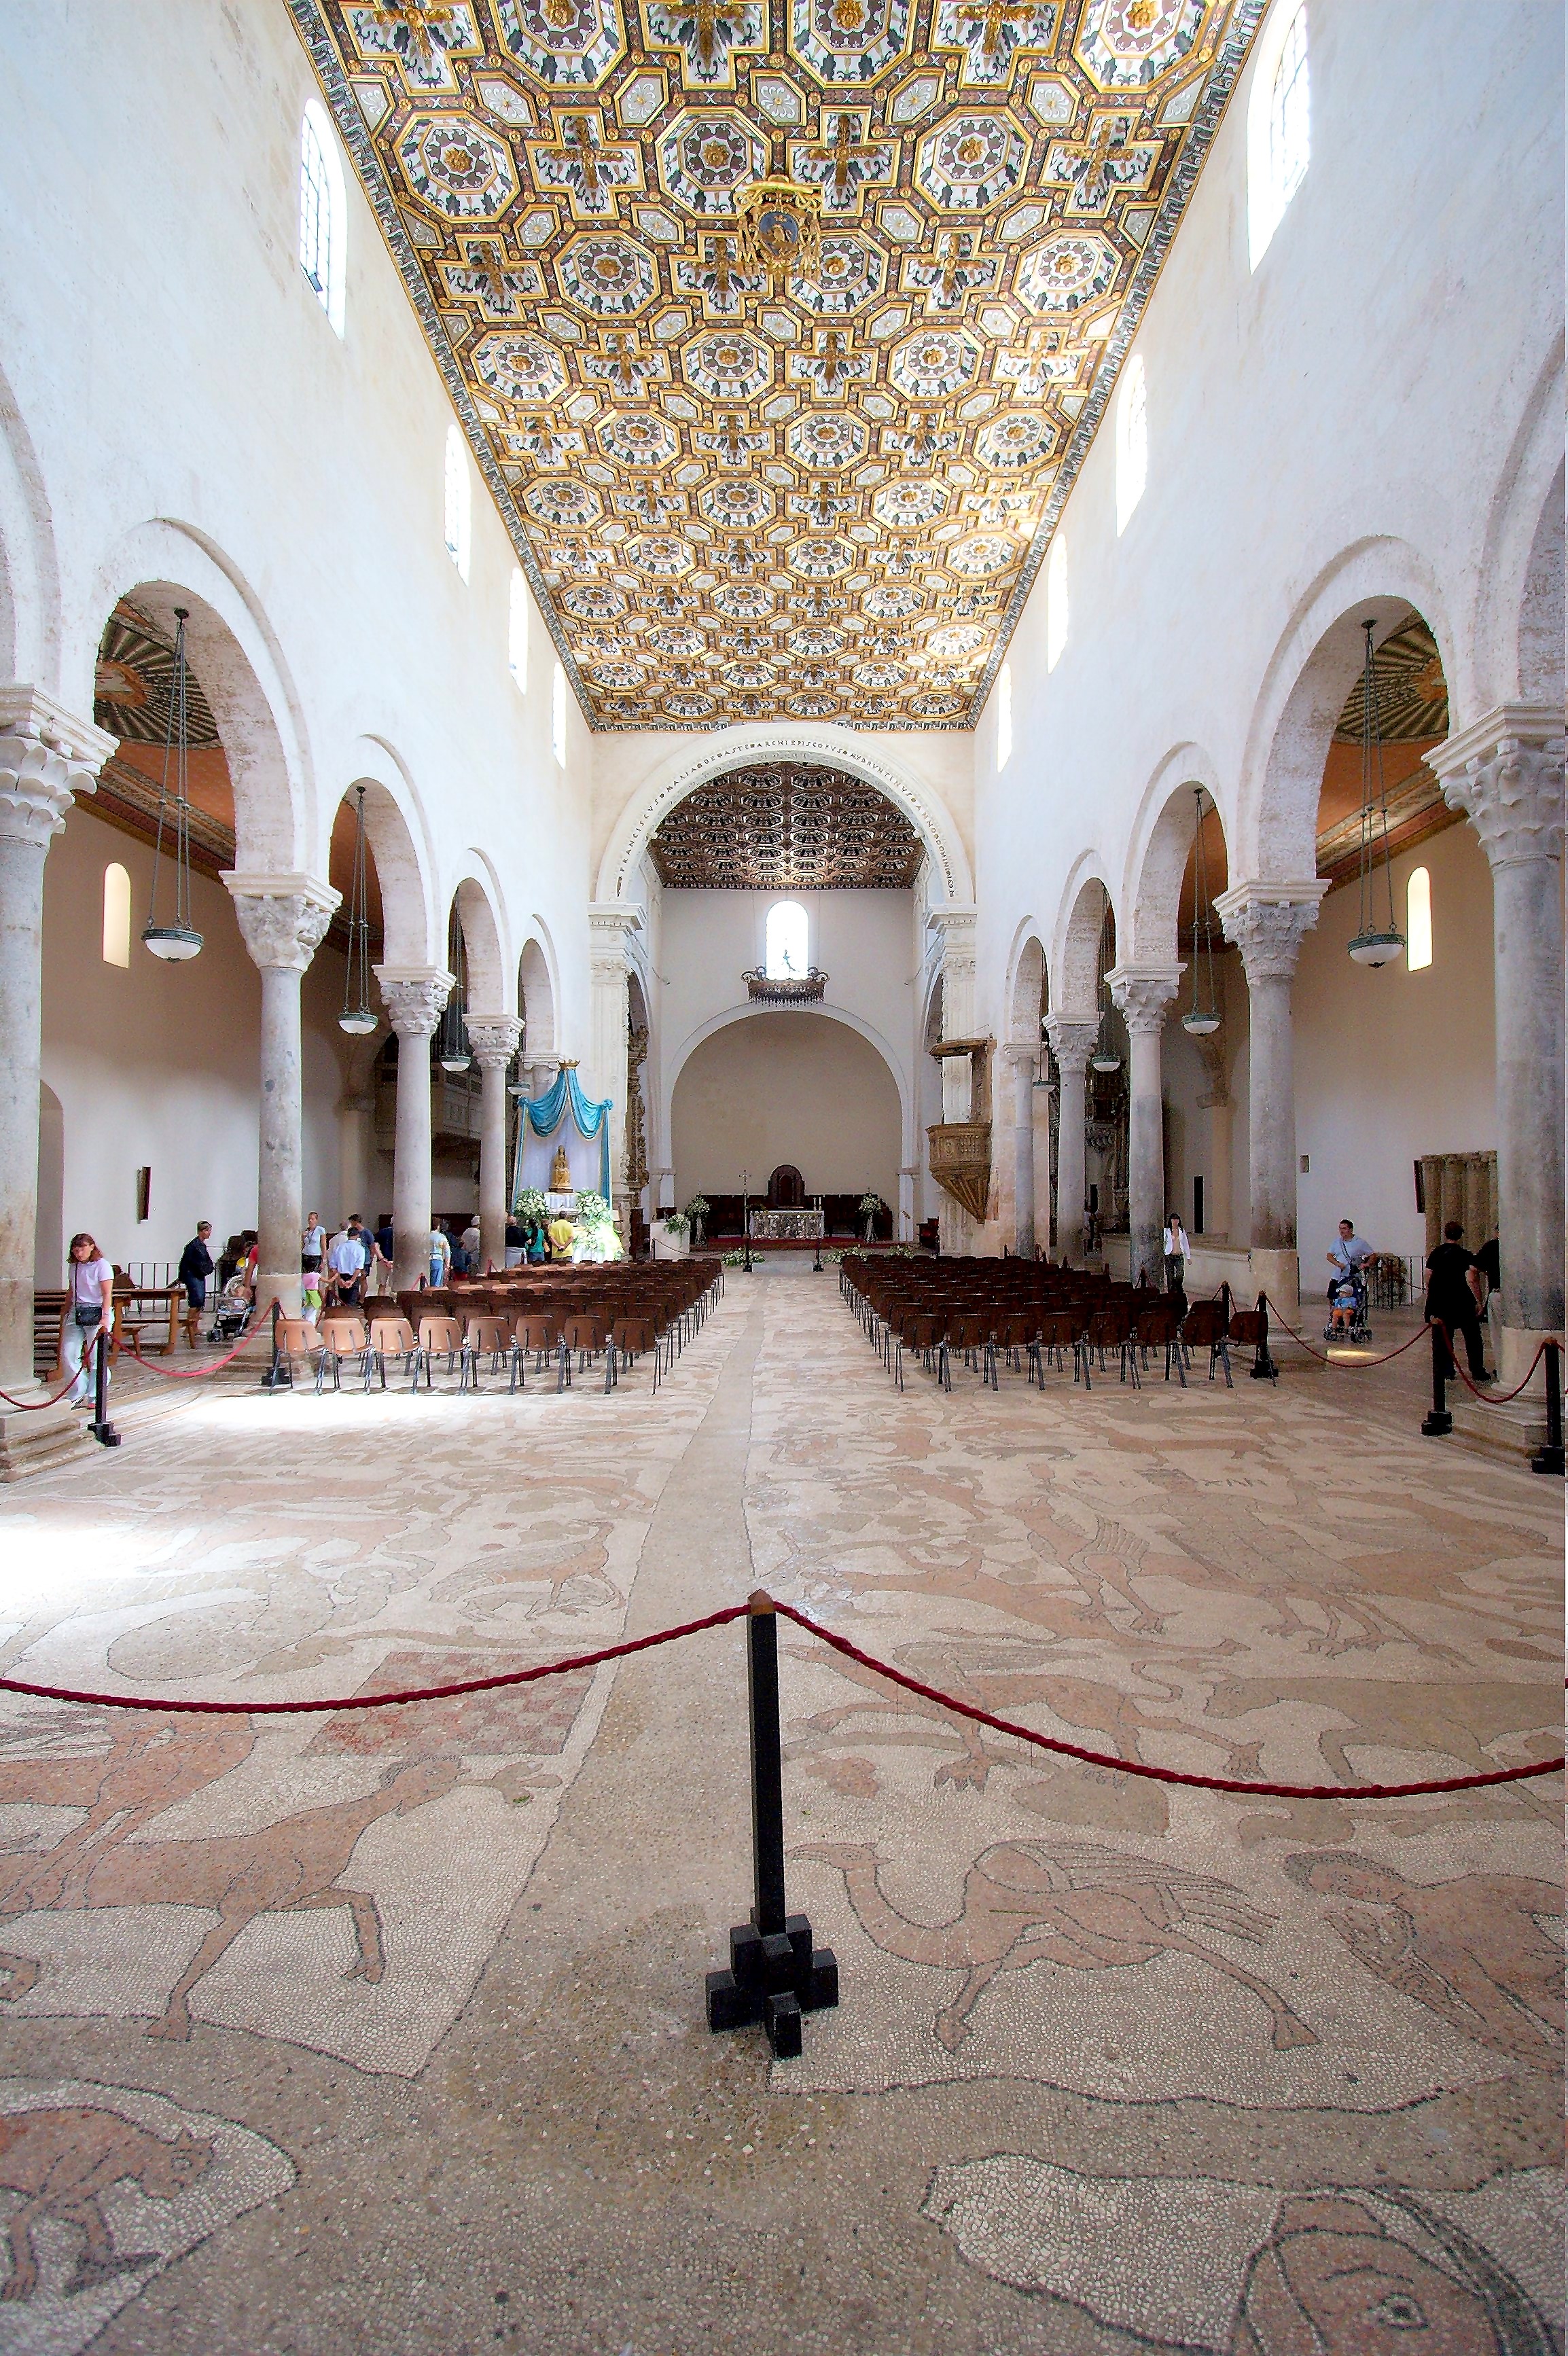 Otranto cathedral interior